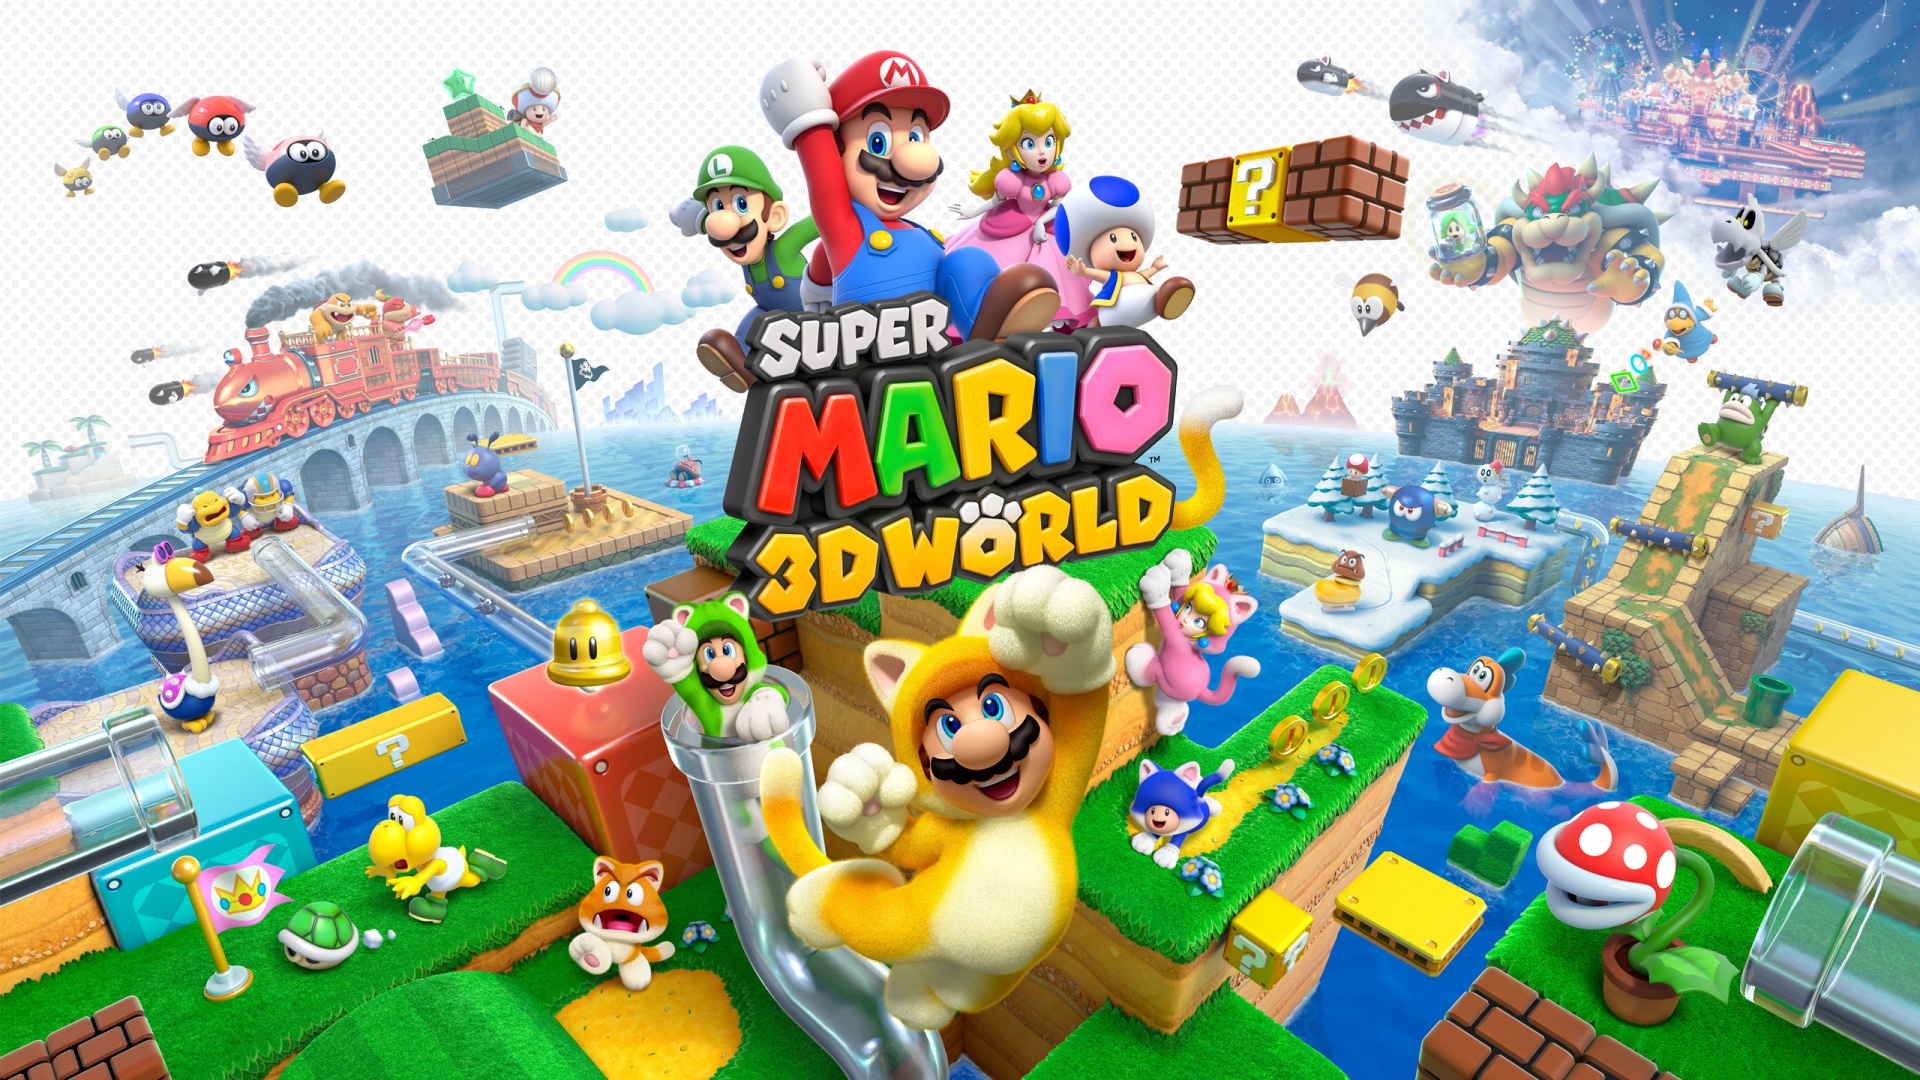 Die besten Super Mario 3D World-Hintergründe für den Telefonbildschirm